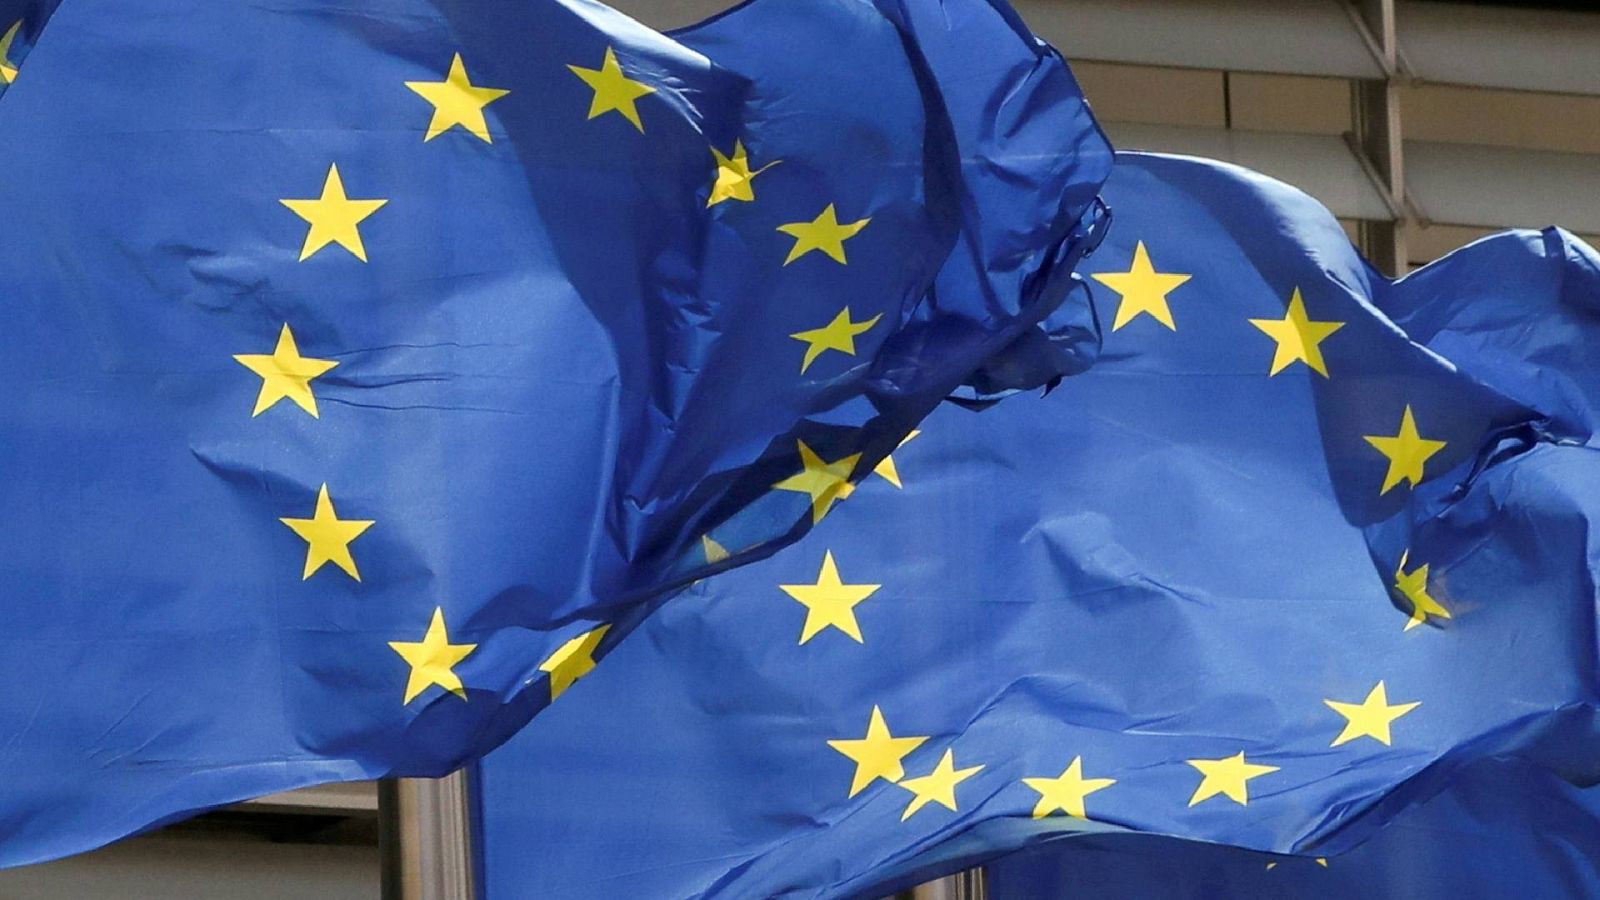 Banderas de la Unión Europea ondeando 